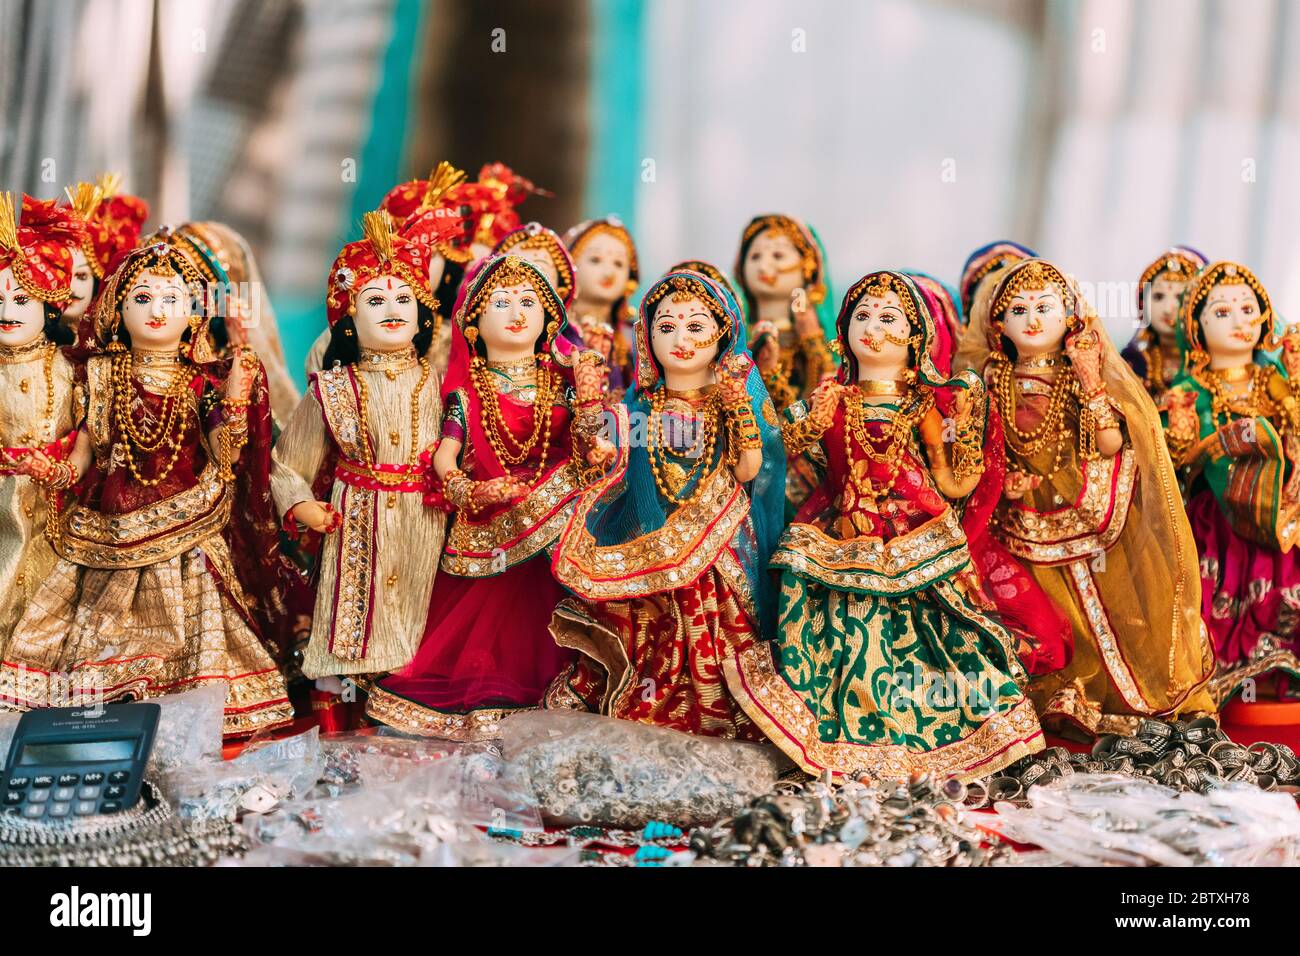 Anjuna, Goa, India - 19 Febbraio 2020: Bambole folcloristiche indiane. Le tradizionali bambole folcloristiche nazionali sono souvenir popolari dall'India. Foto Stock